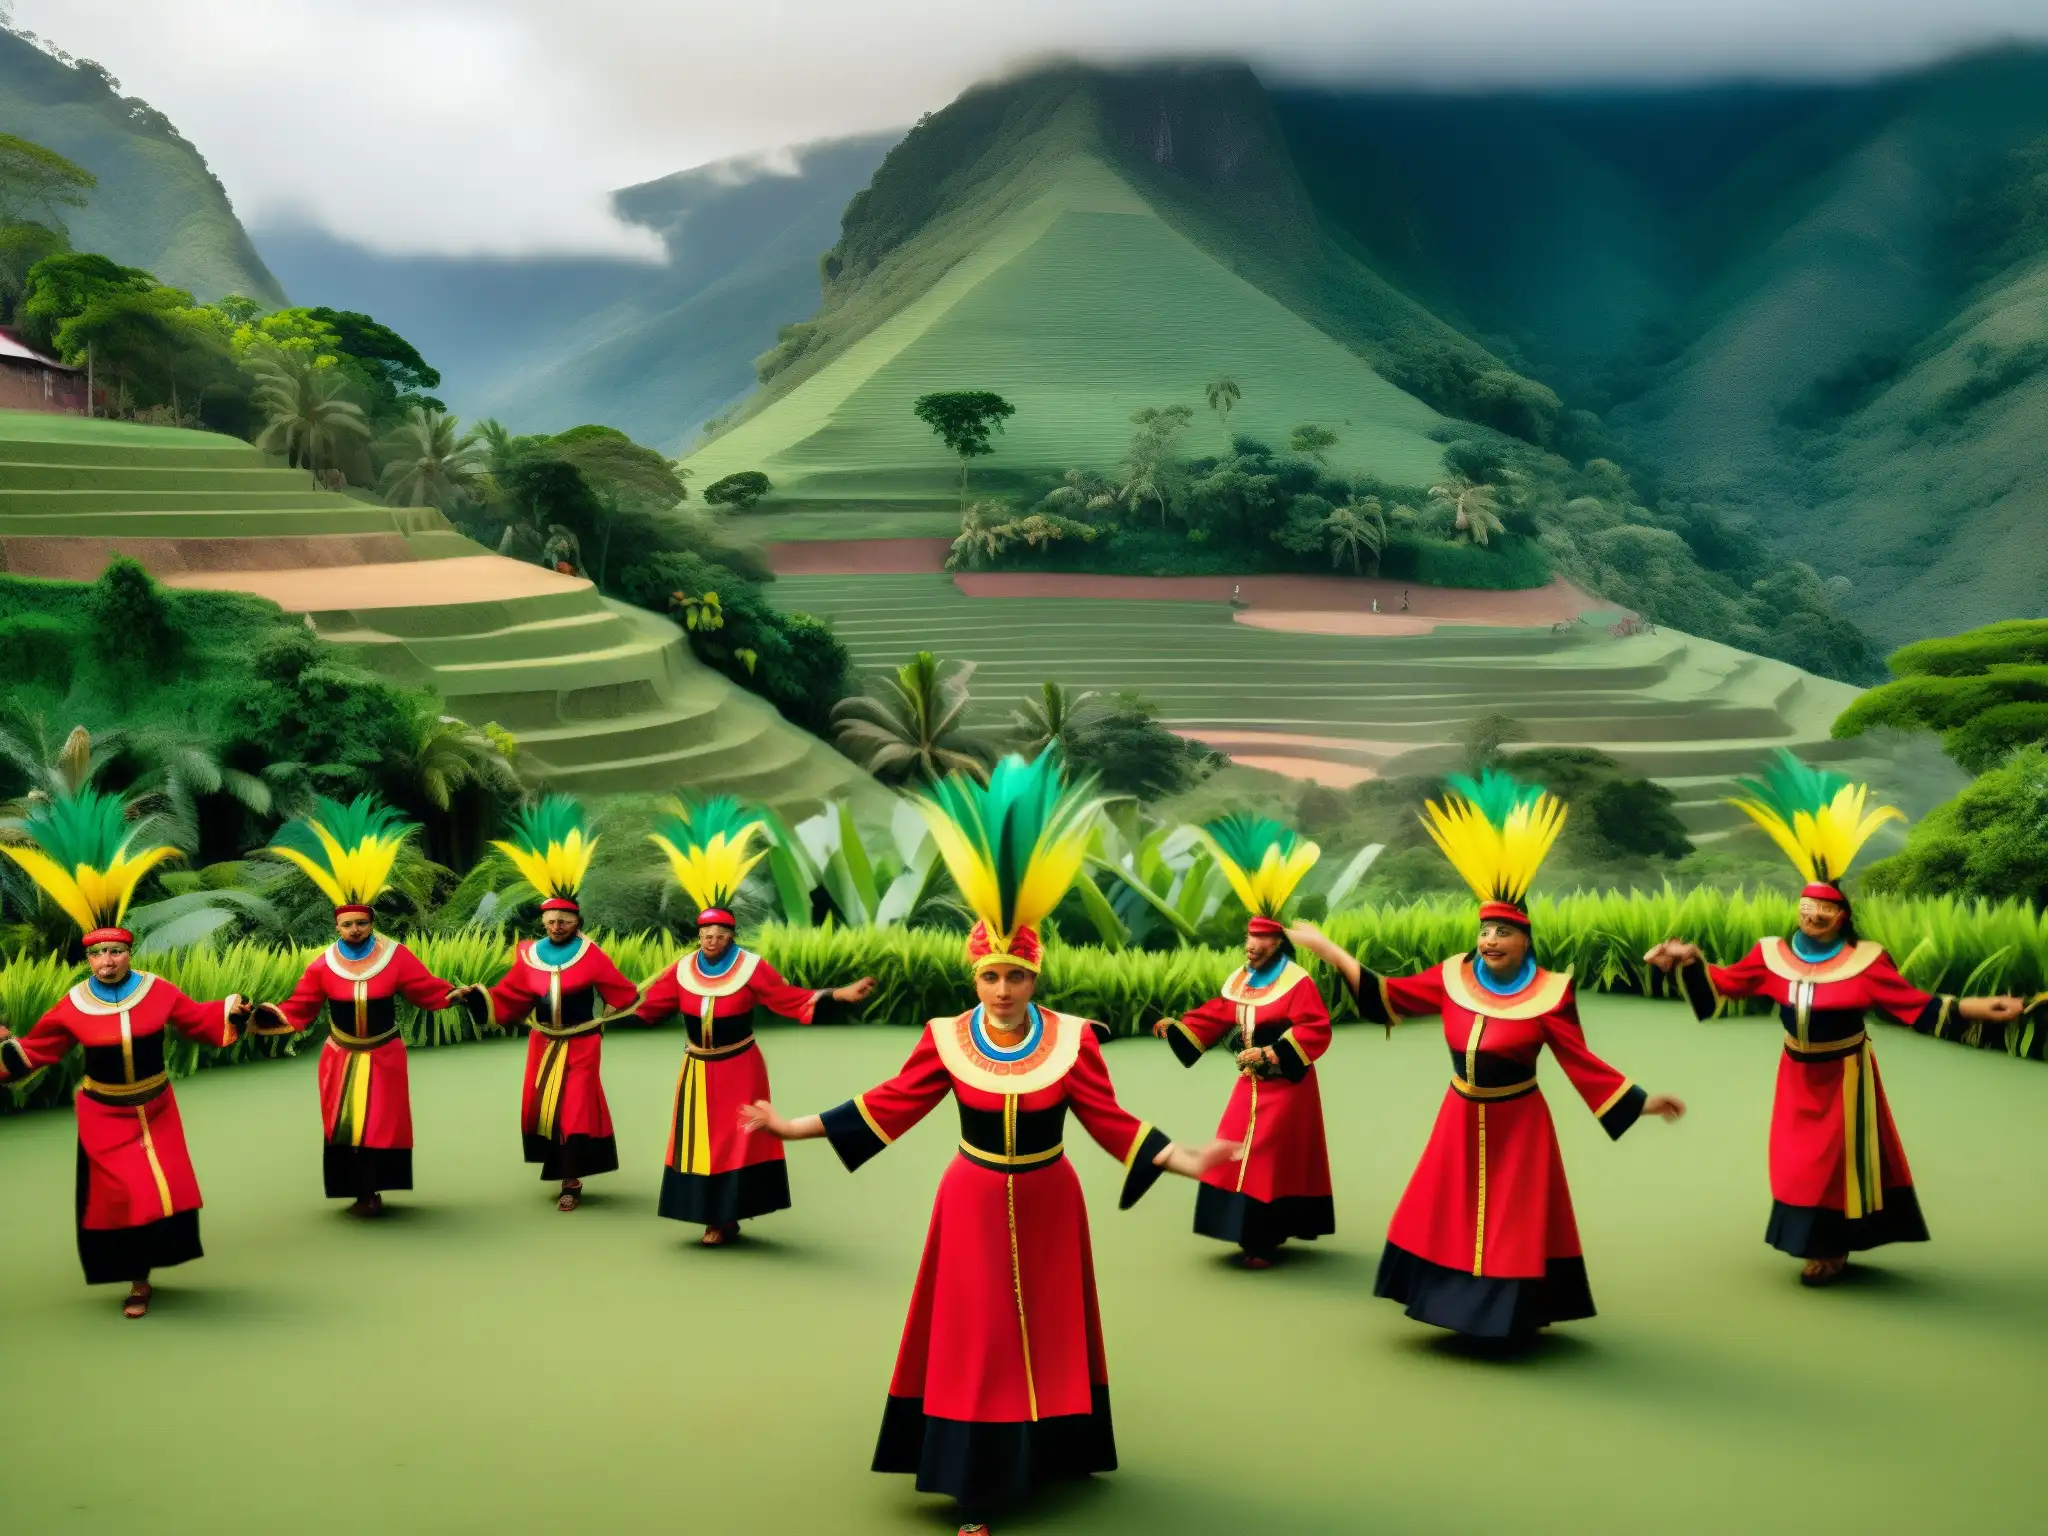 Colorido ritual de El Ánima de Taguapire en Venezuela, con vibrantes trajes y paisaje exuberante